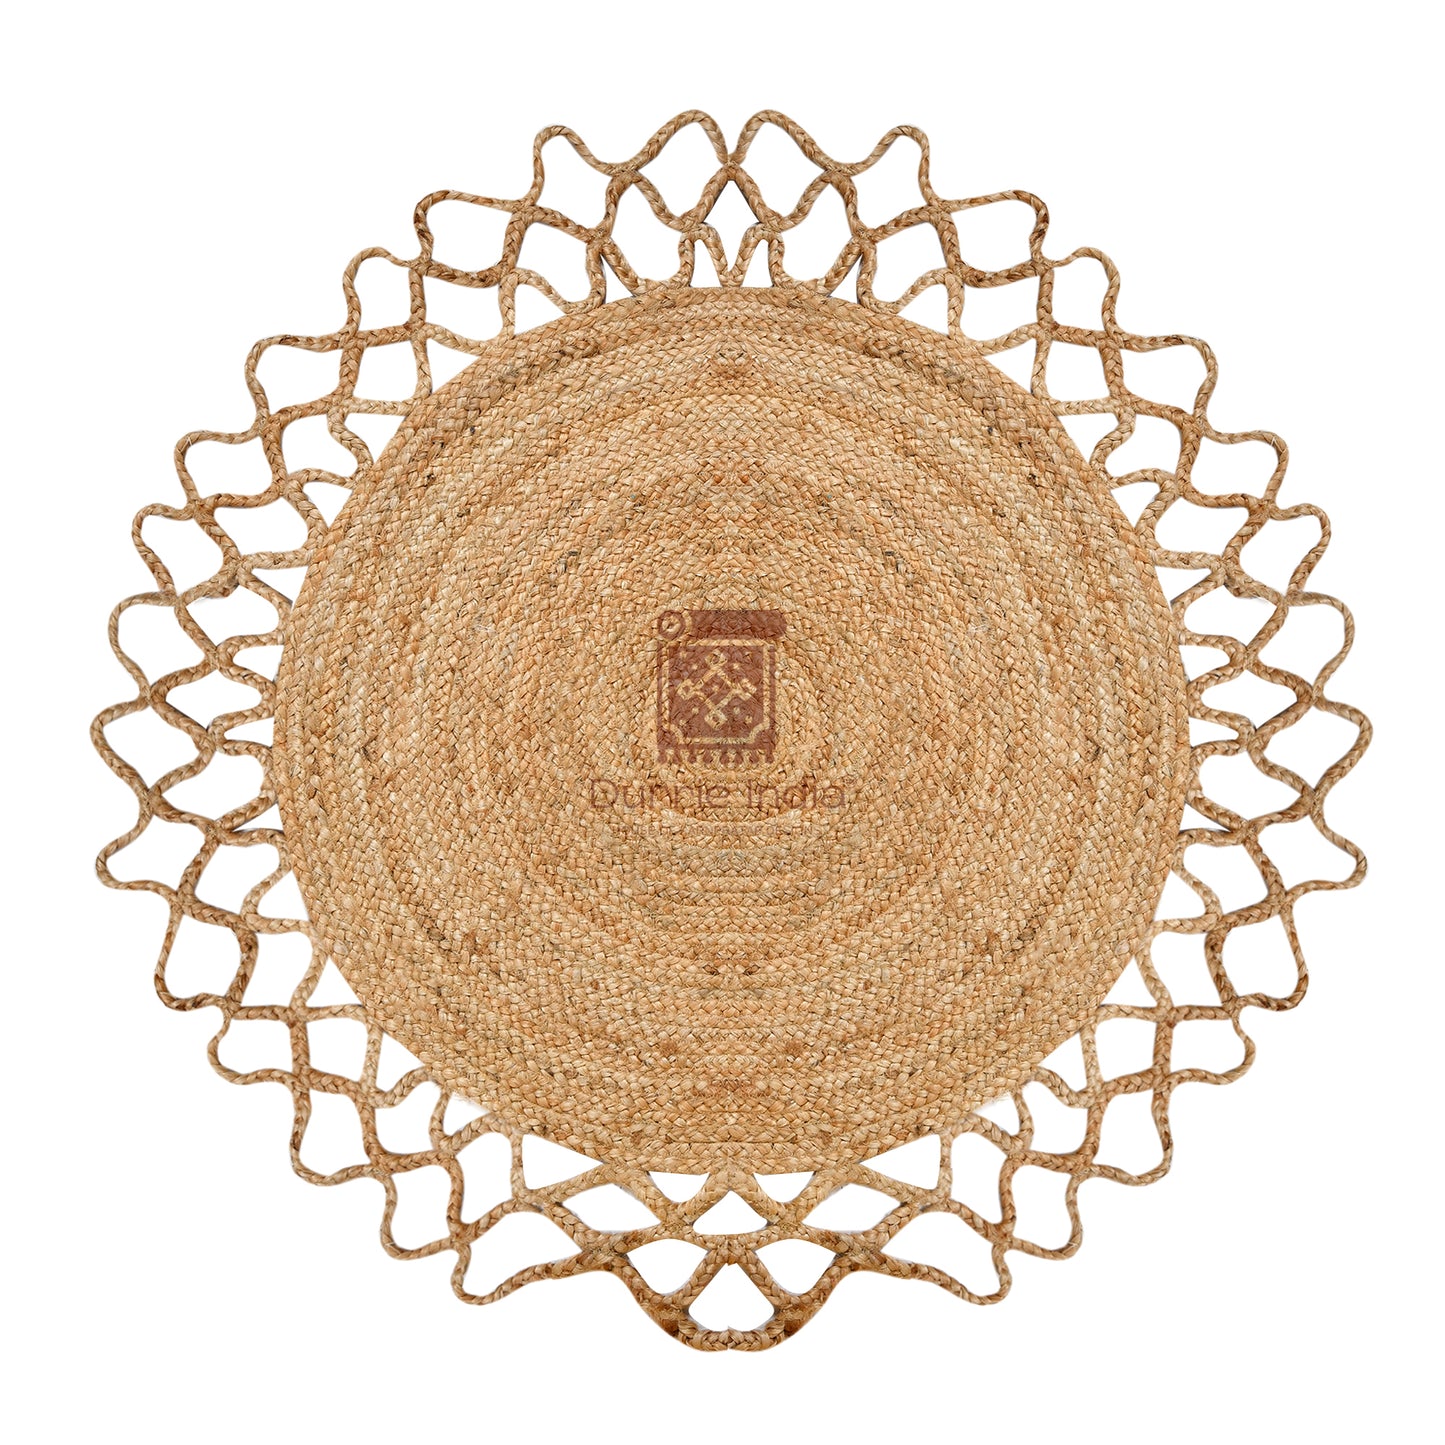 Handmade Crochet Web Border Round Hemp Rug - Artisanal Elegance for Your Living Space